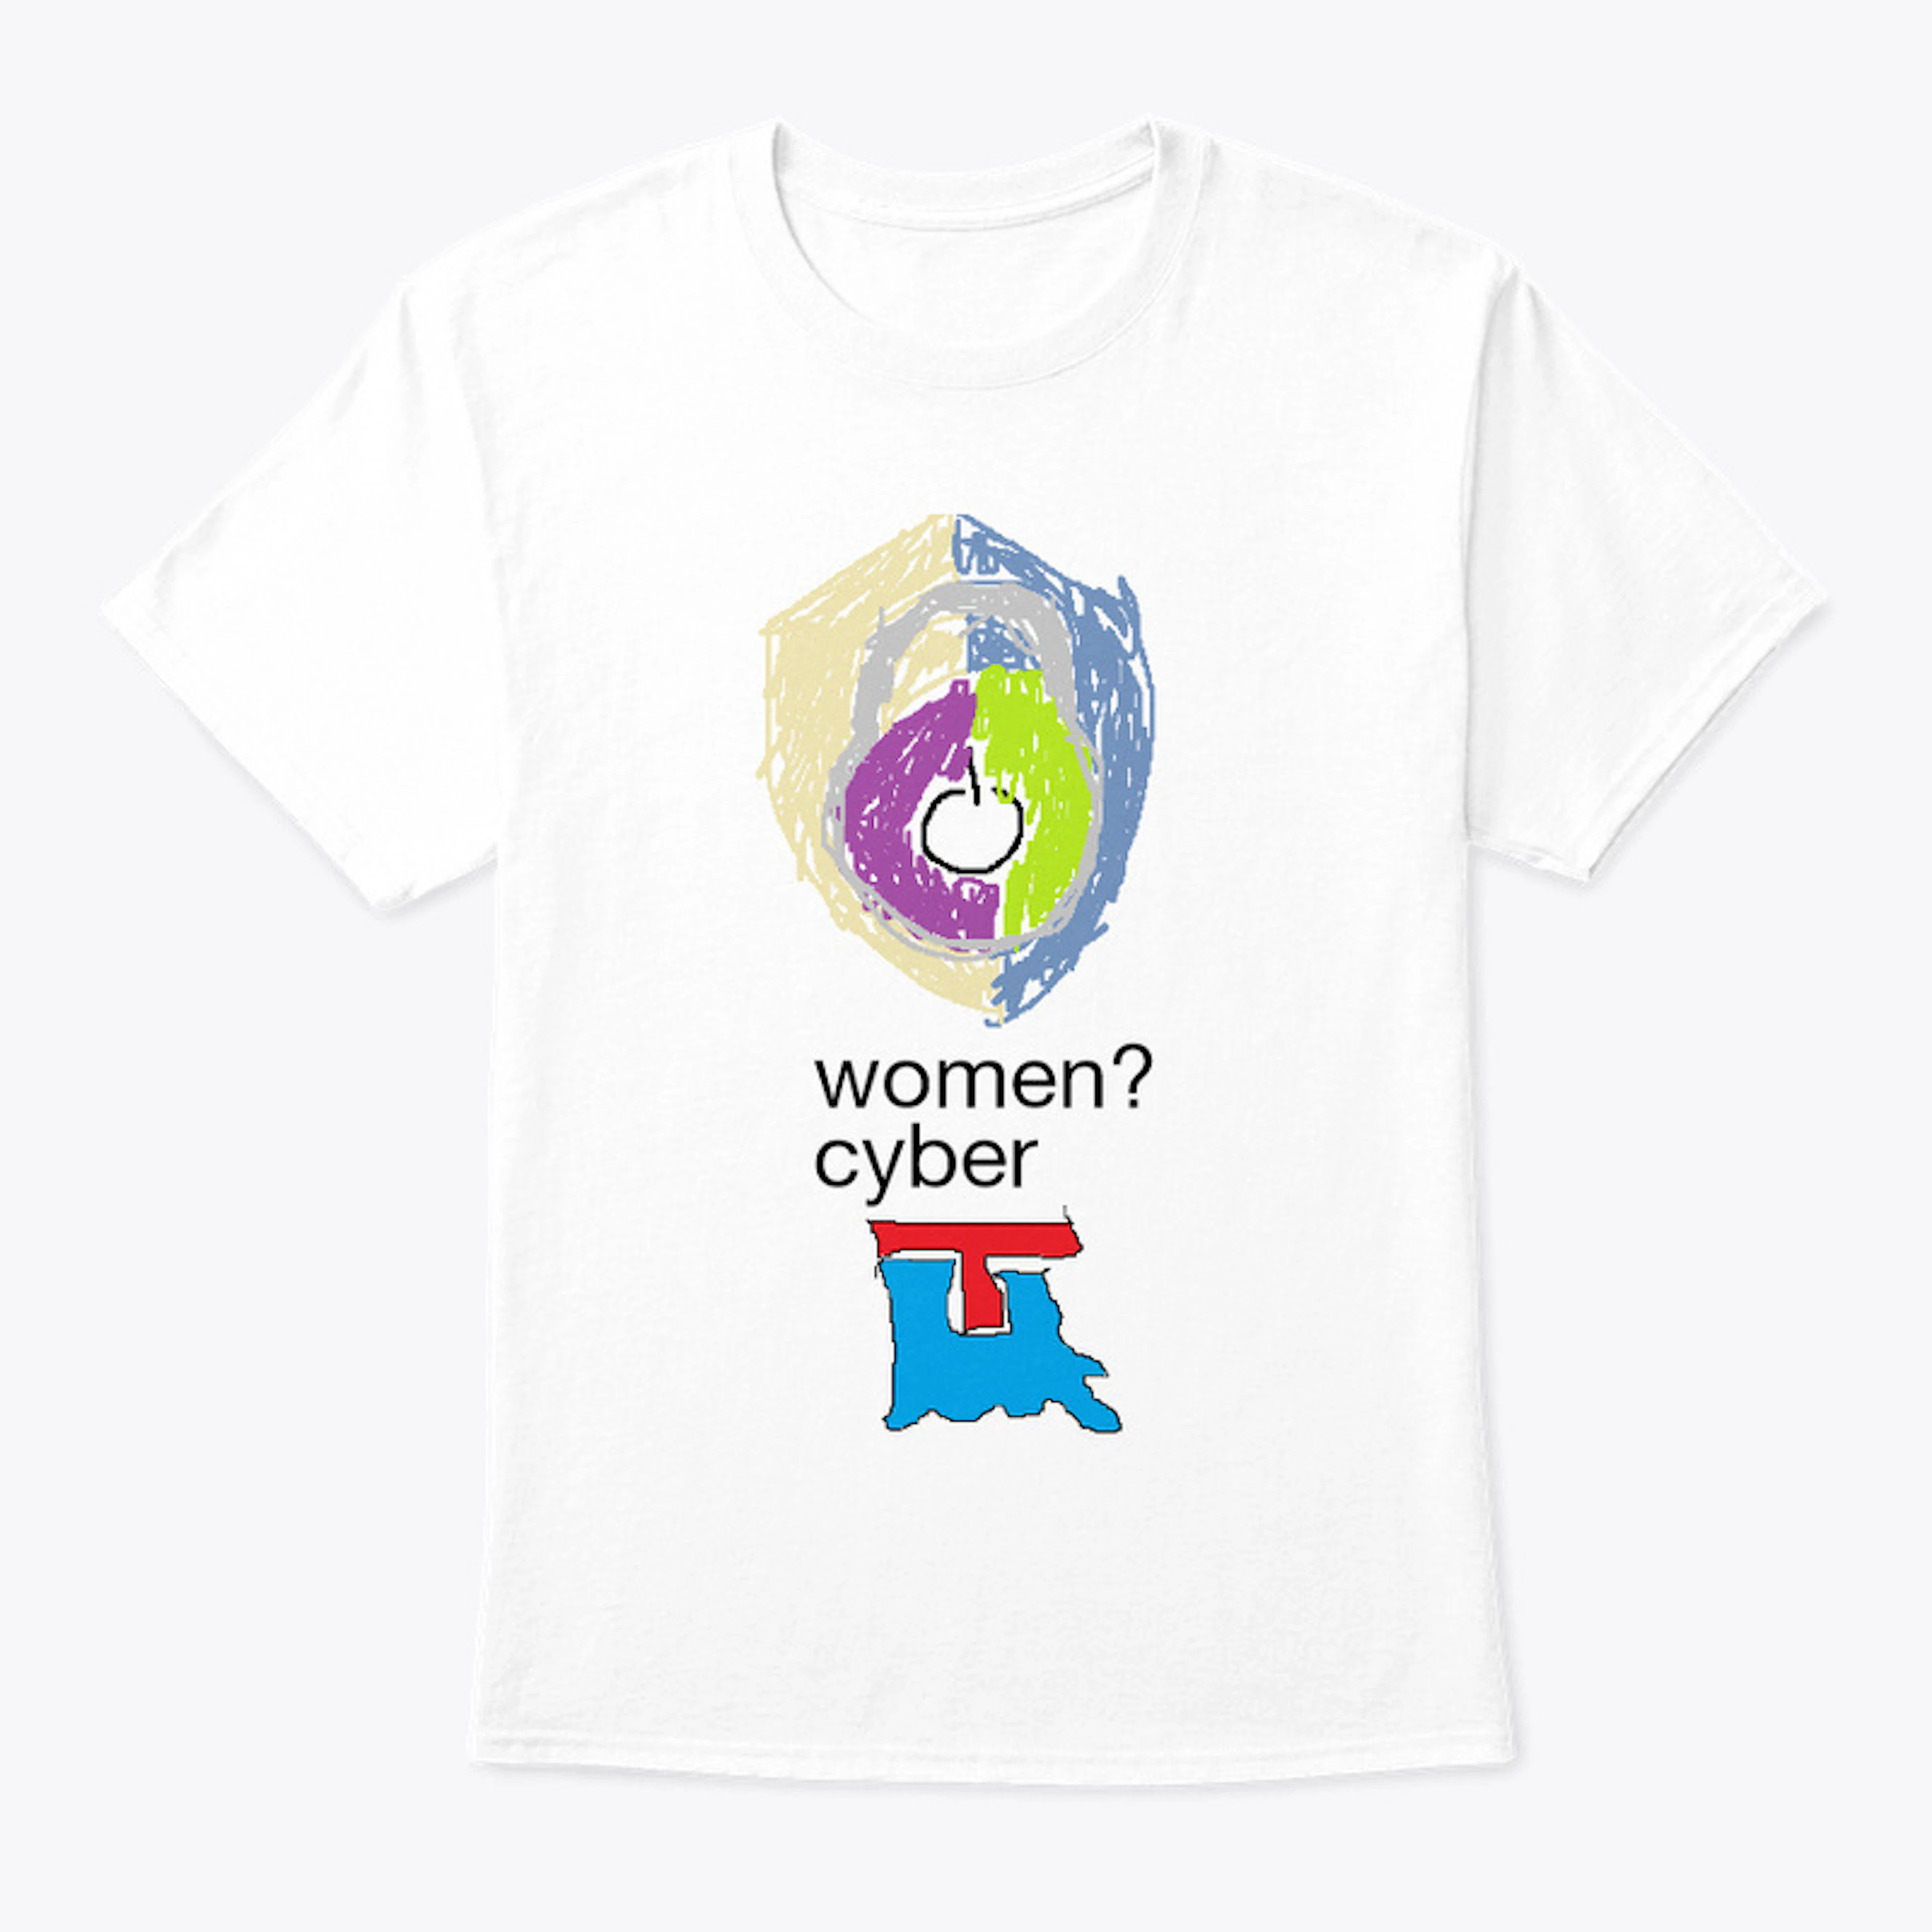 Women in Cyber Security 